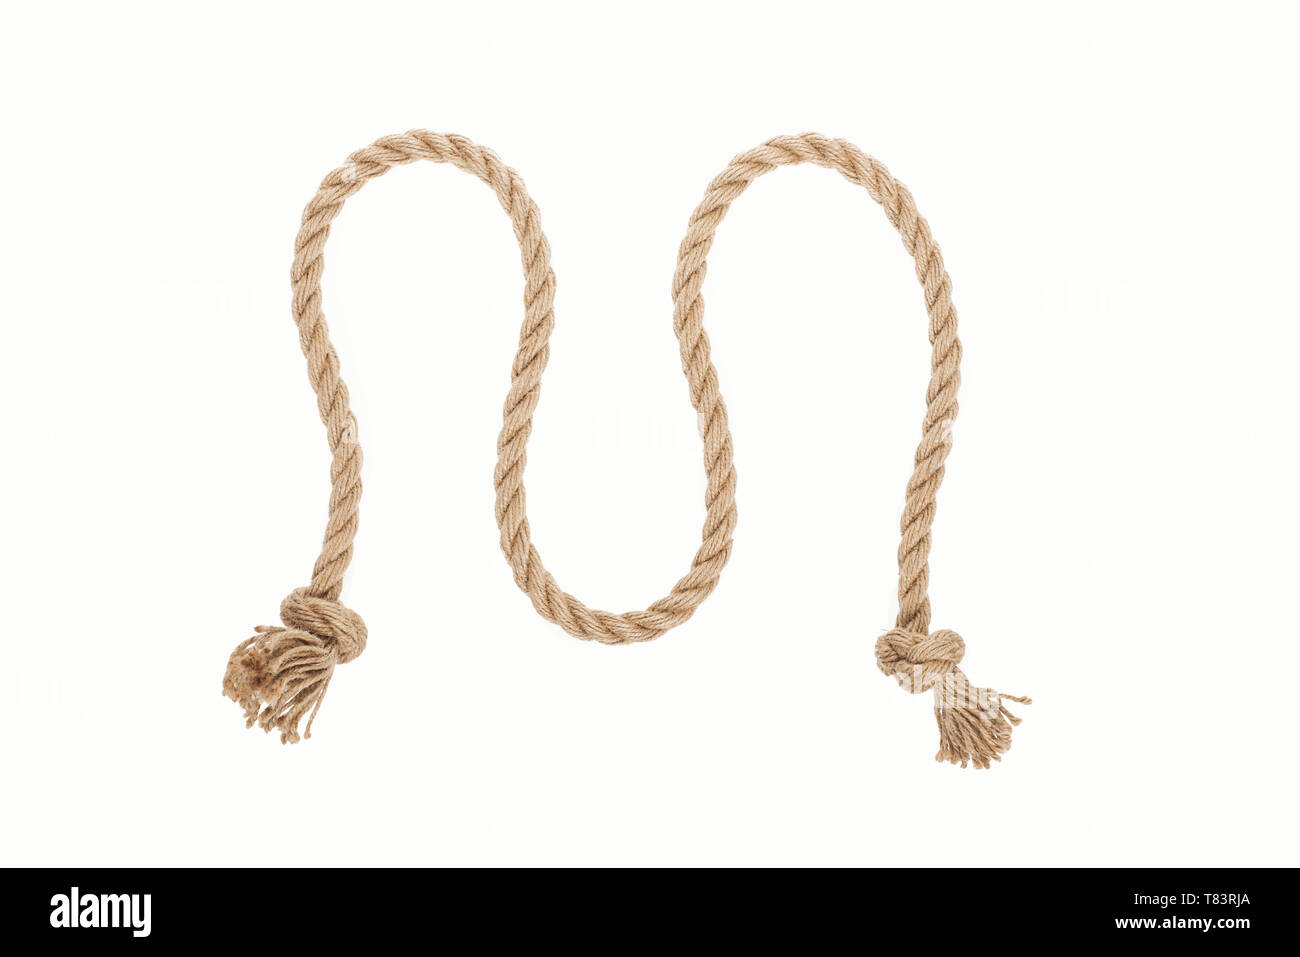 La corde de jute agita avec noeuds isolated on white Banque D'Images